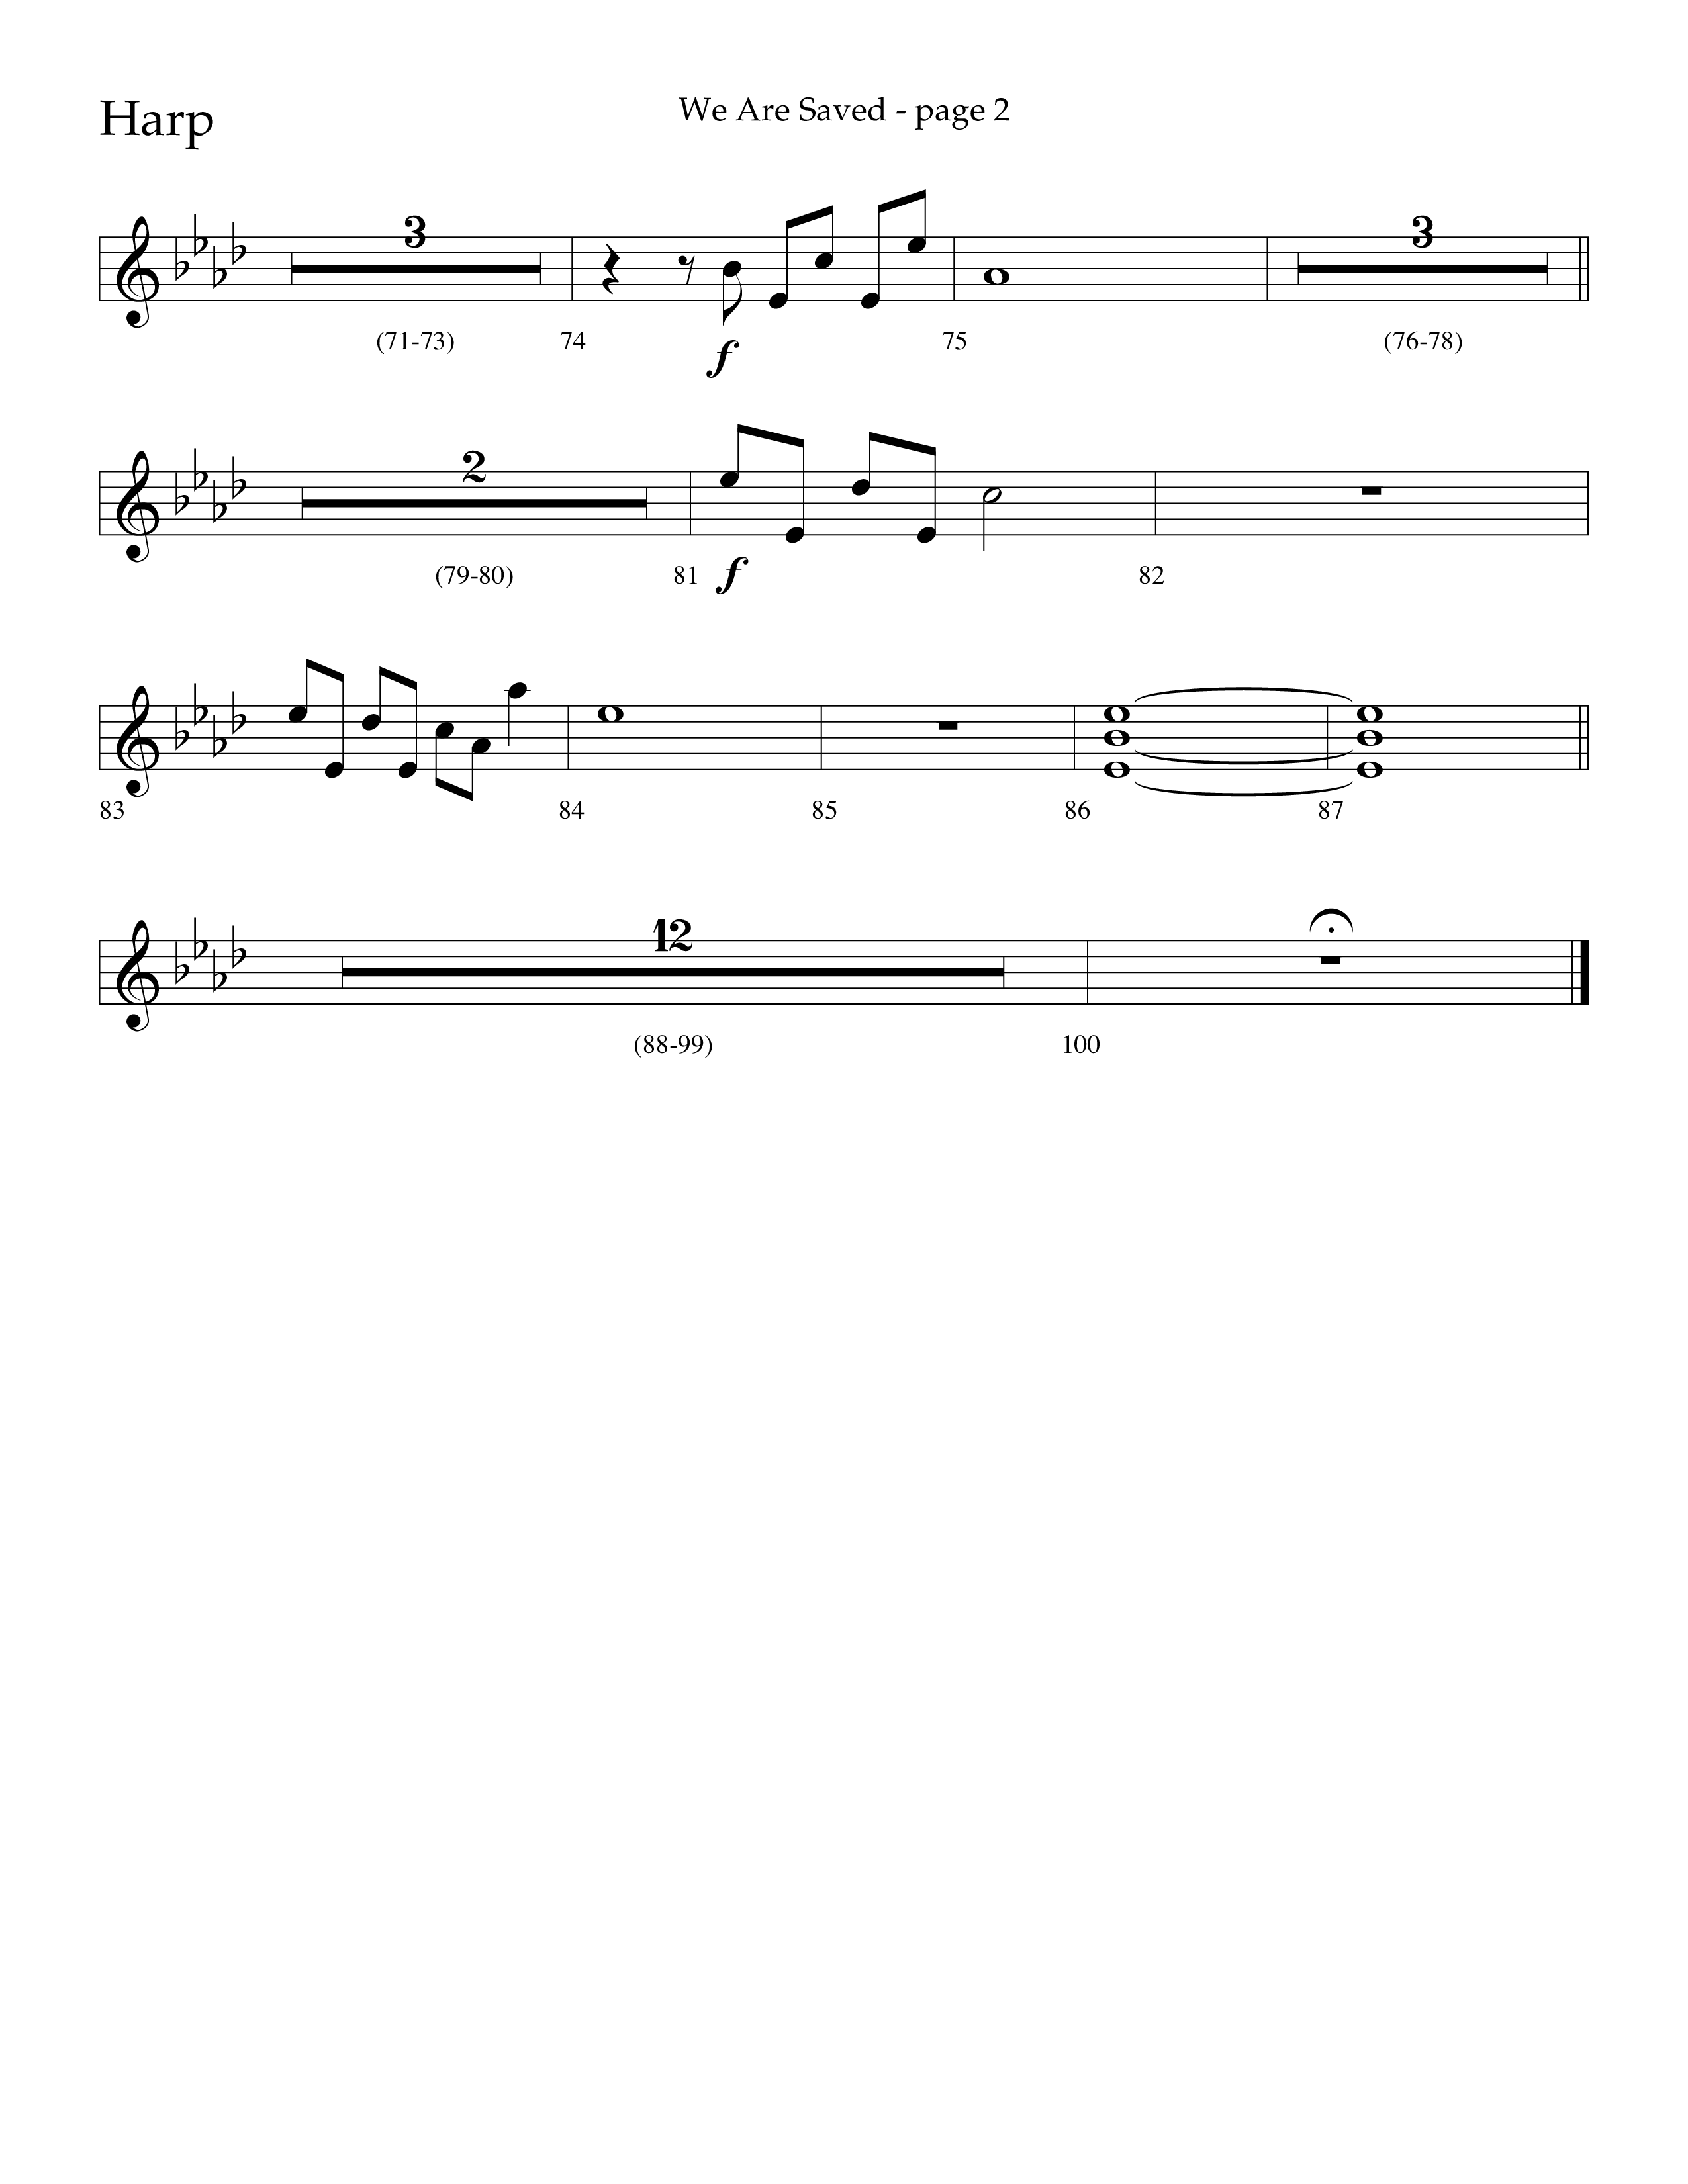 We Are Saved (Choral Anthem SATB) Harp (Lifeway Choral / Arr. Cliff Duren)